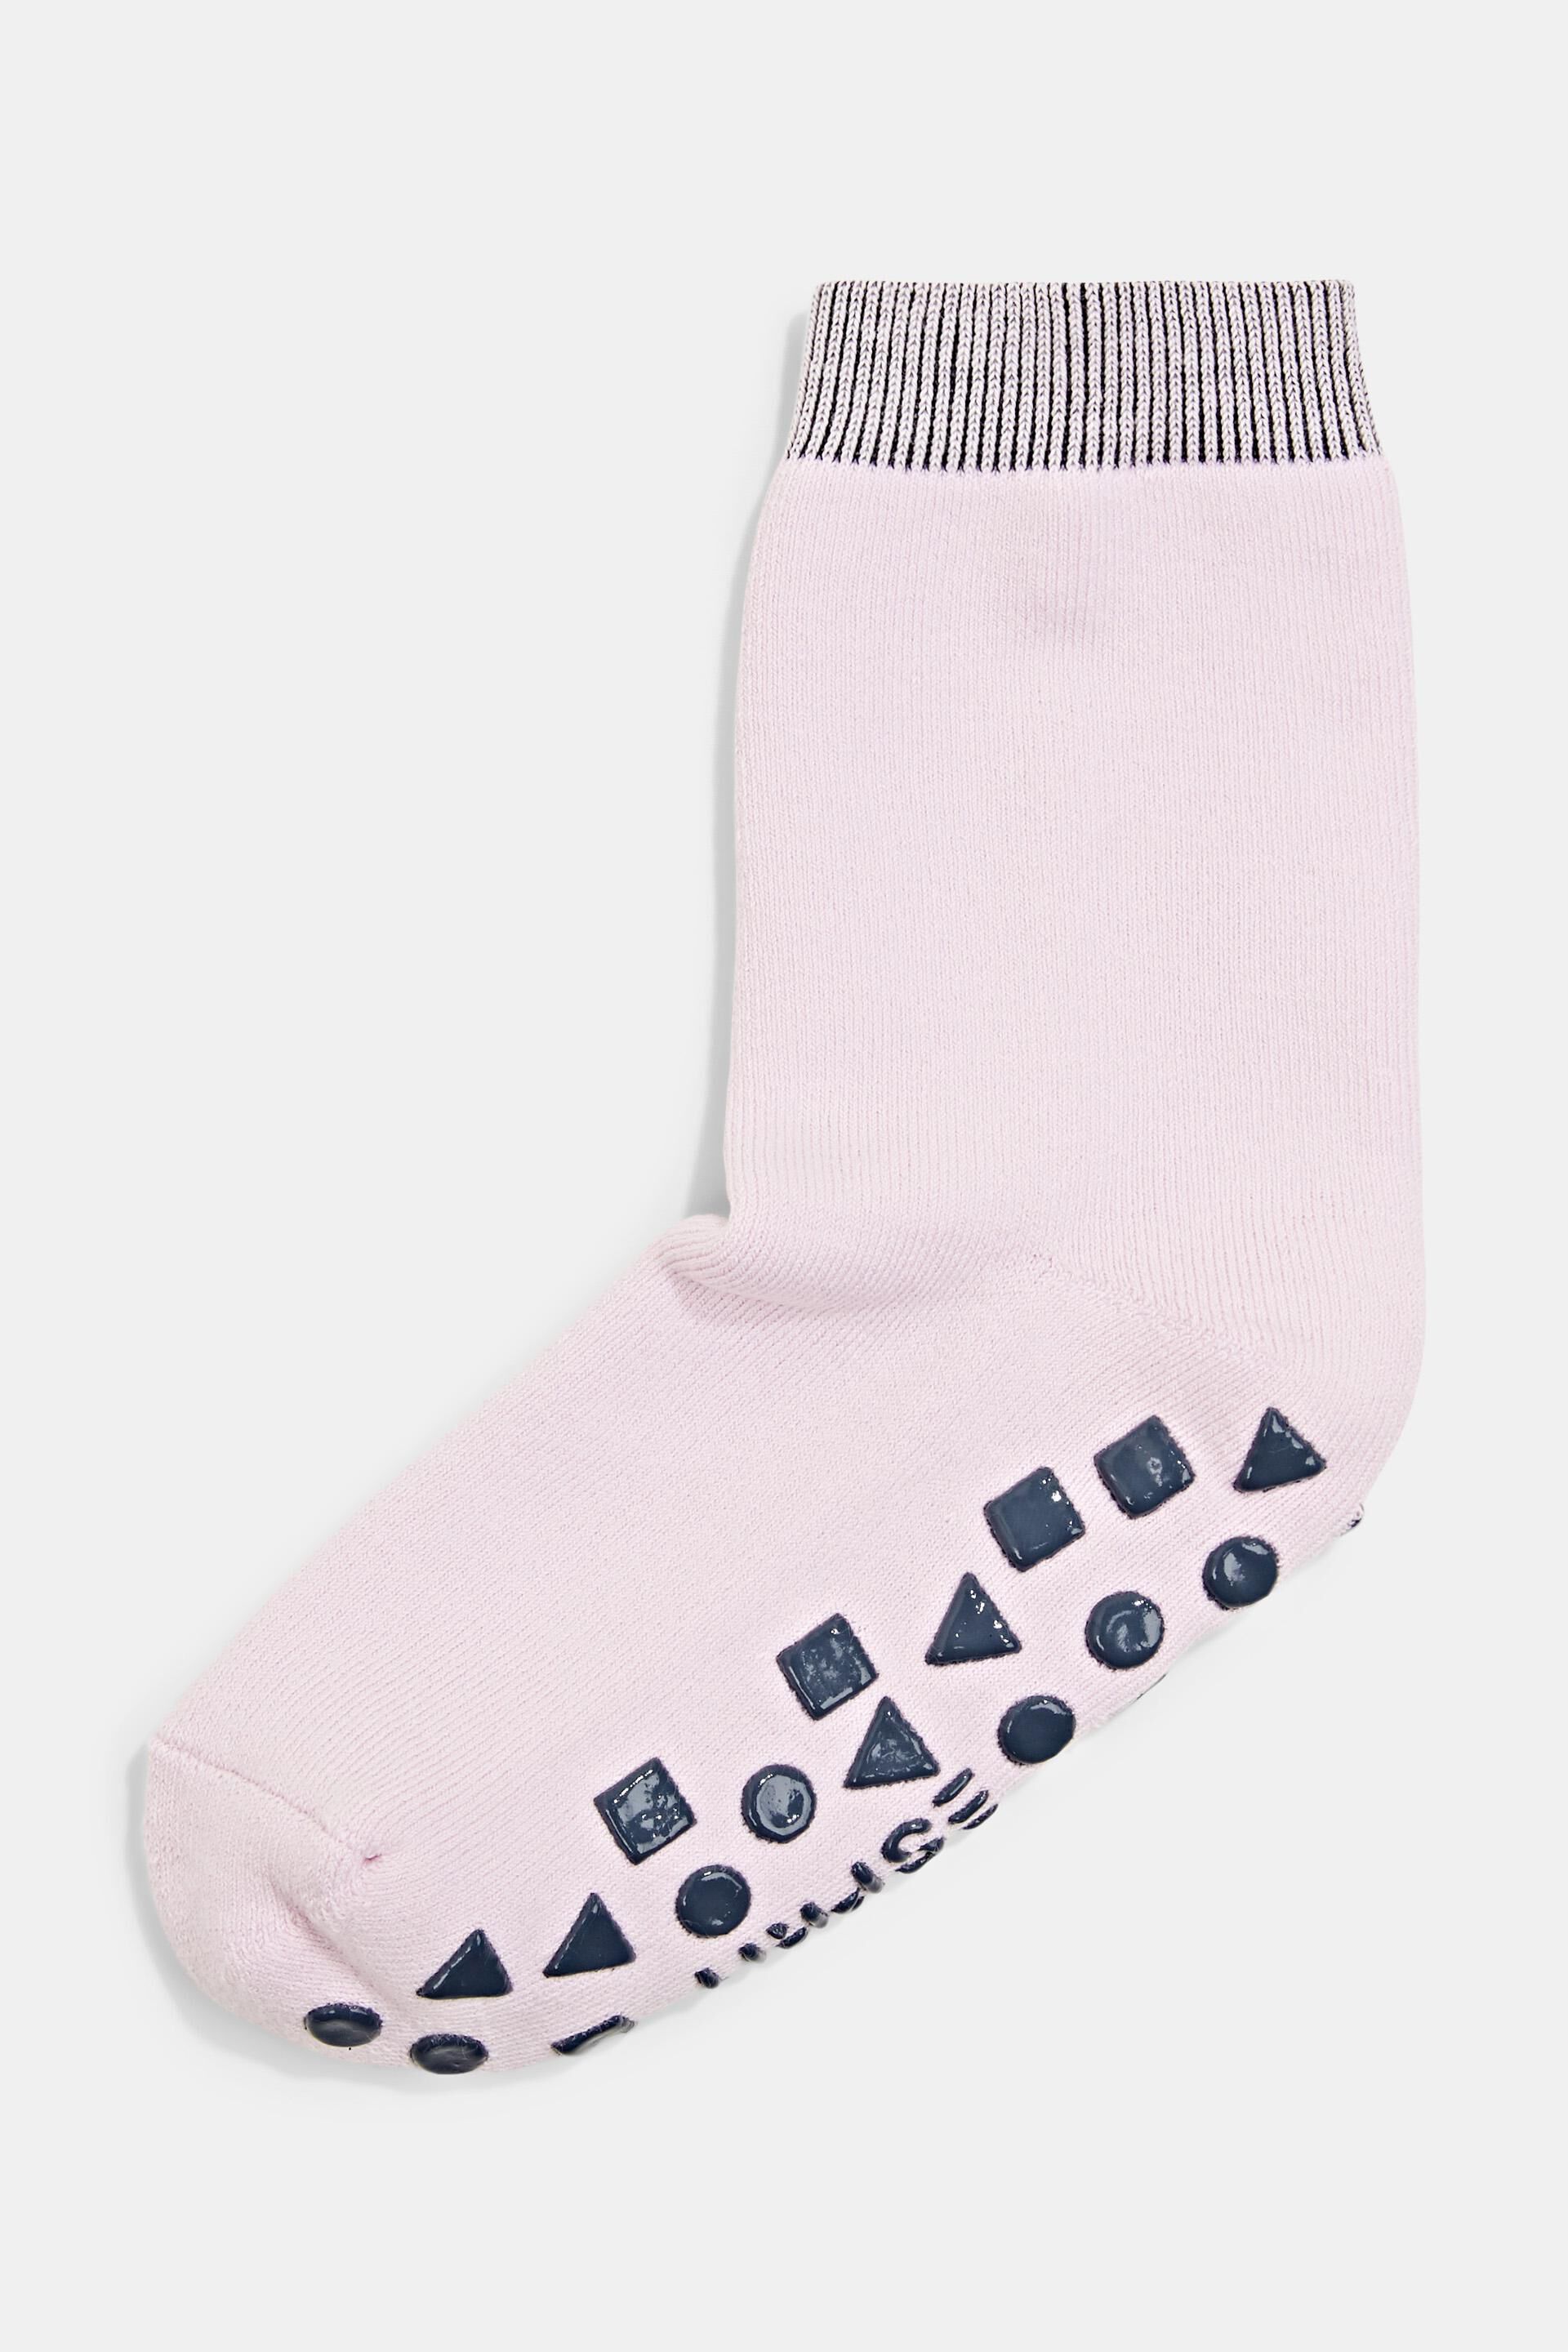 Esprit Bio-Baumwolle Rutschfeste gemischter Socken aus